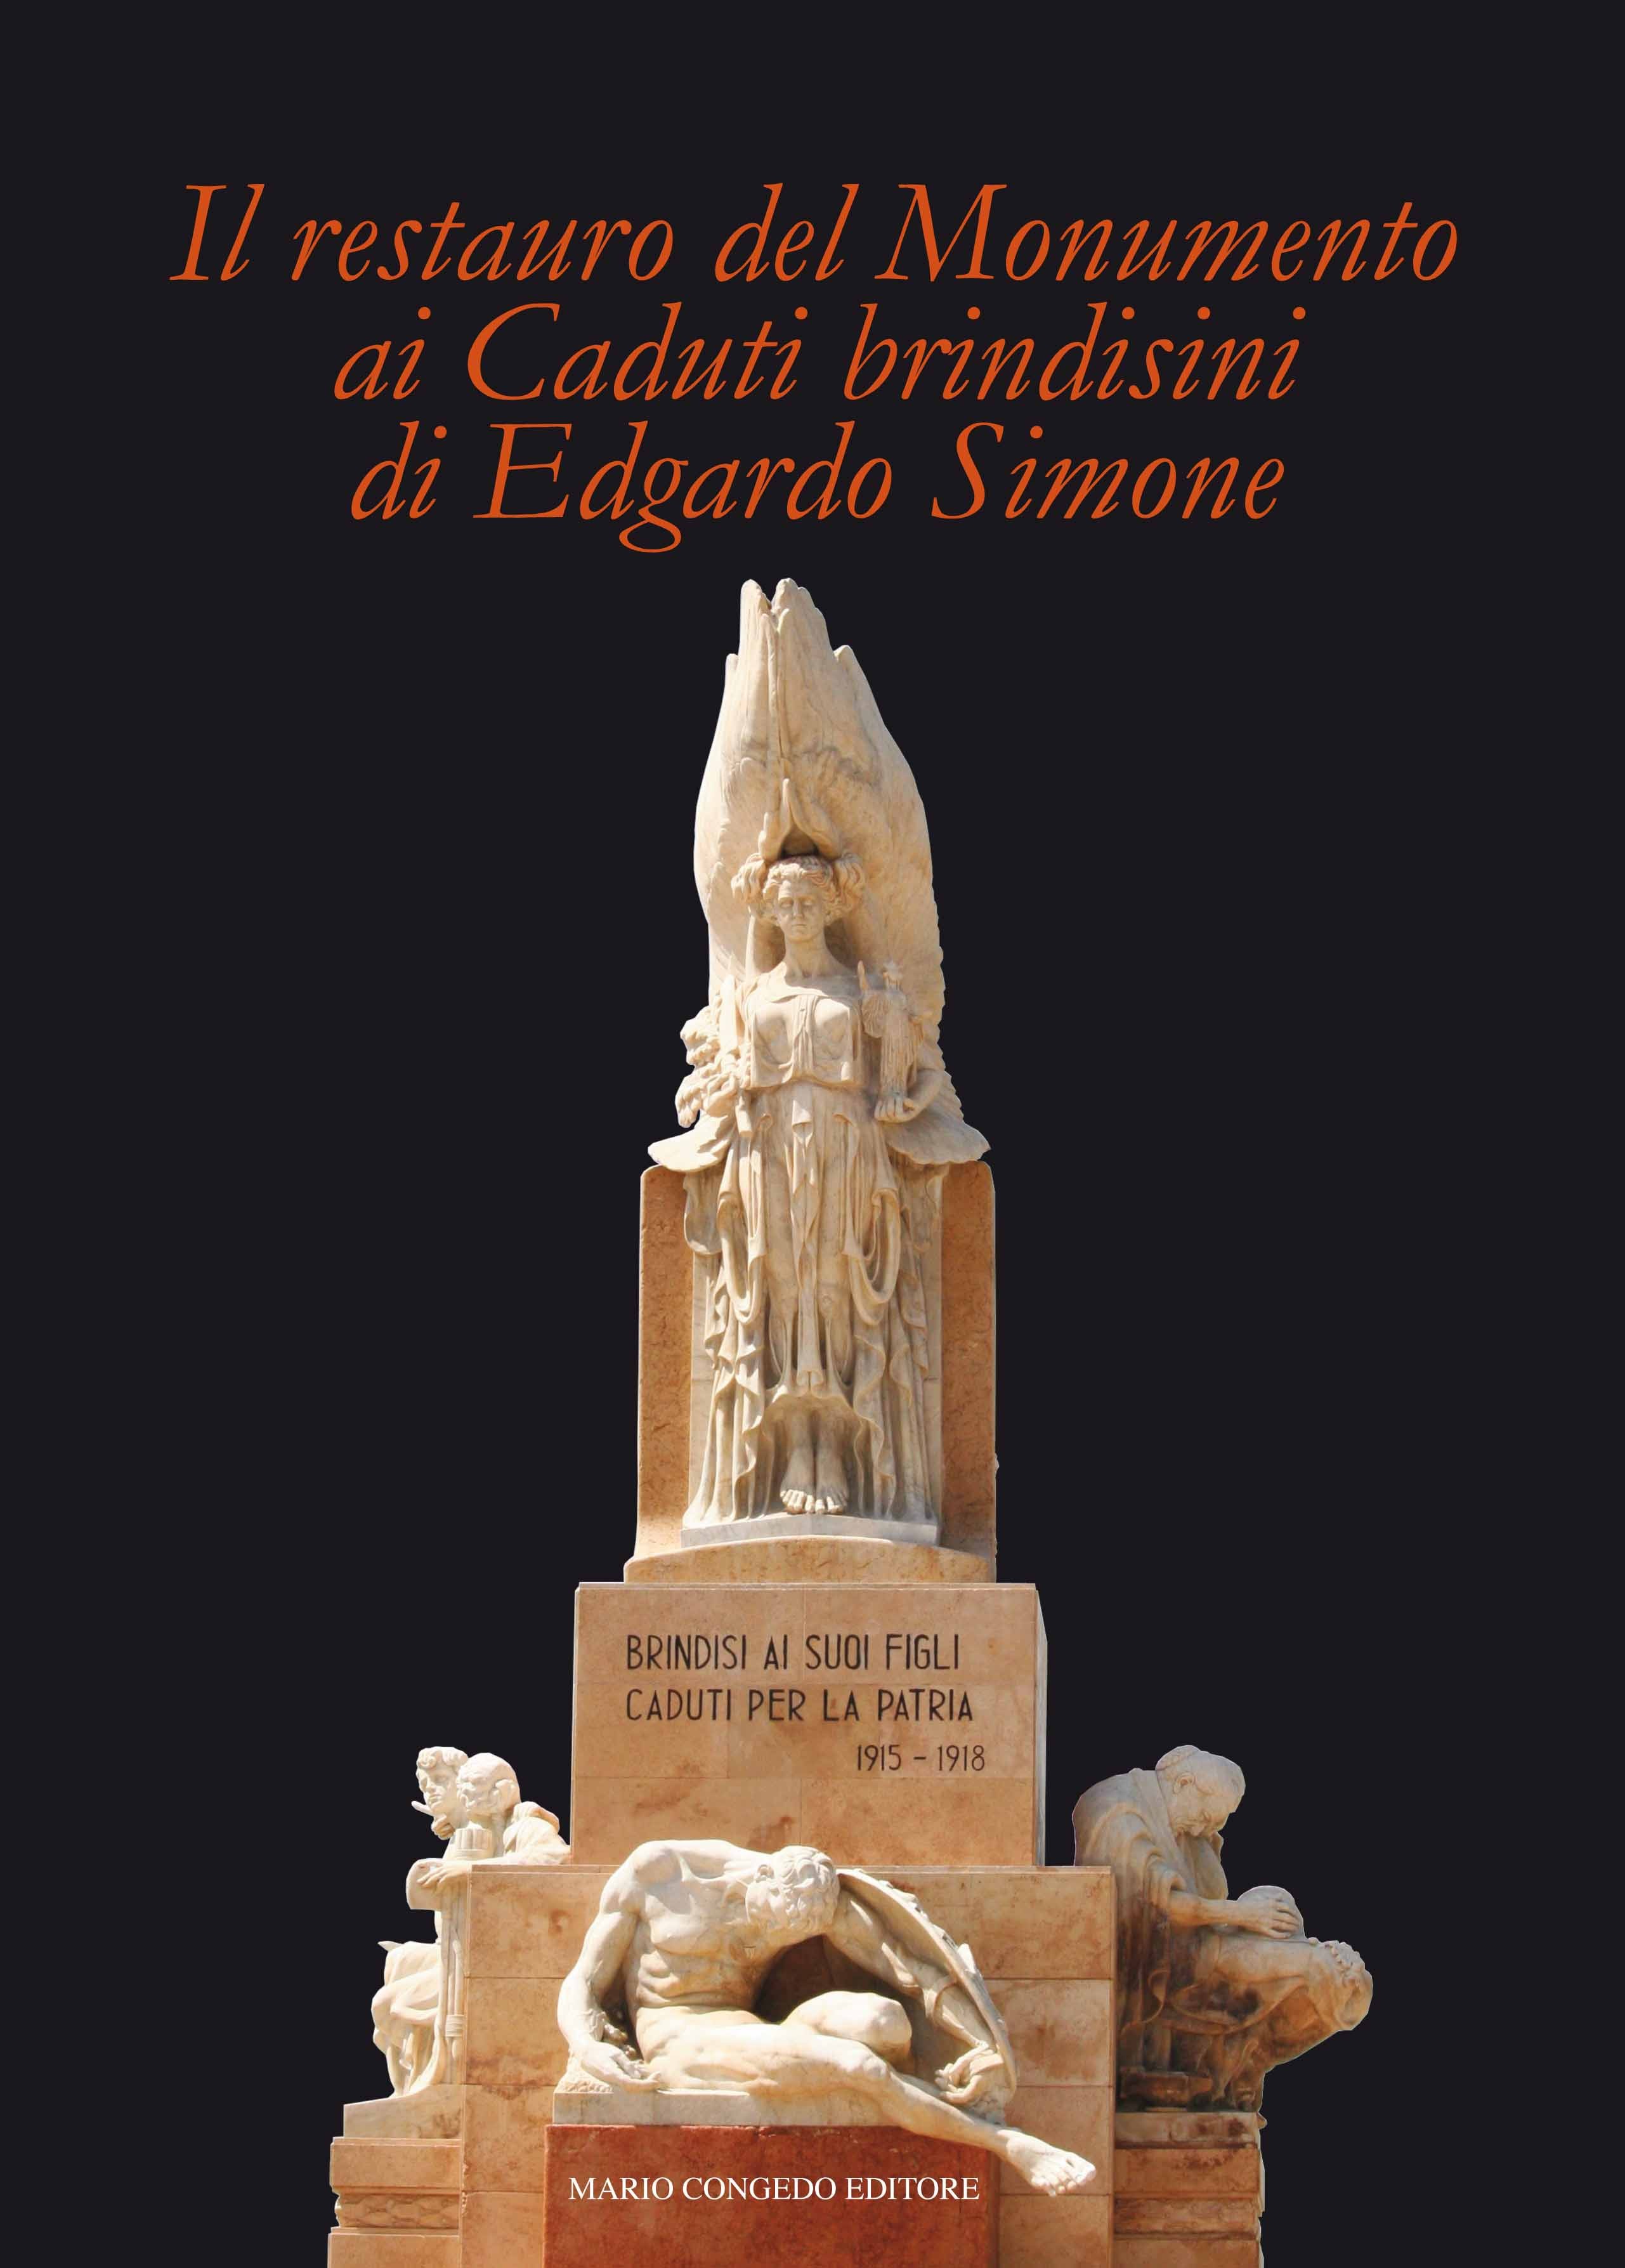 Il restauro del Monumento ai Caduti brindisini di Edgardo Simone